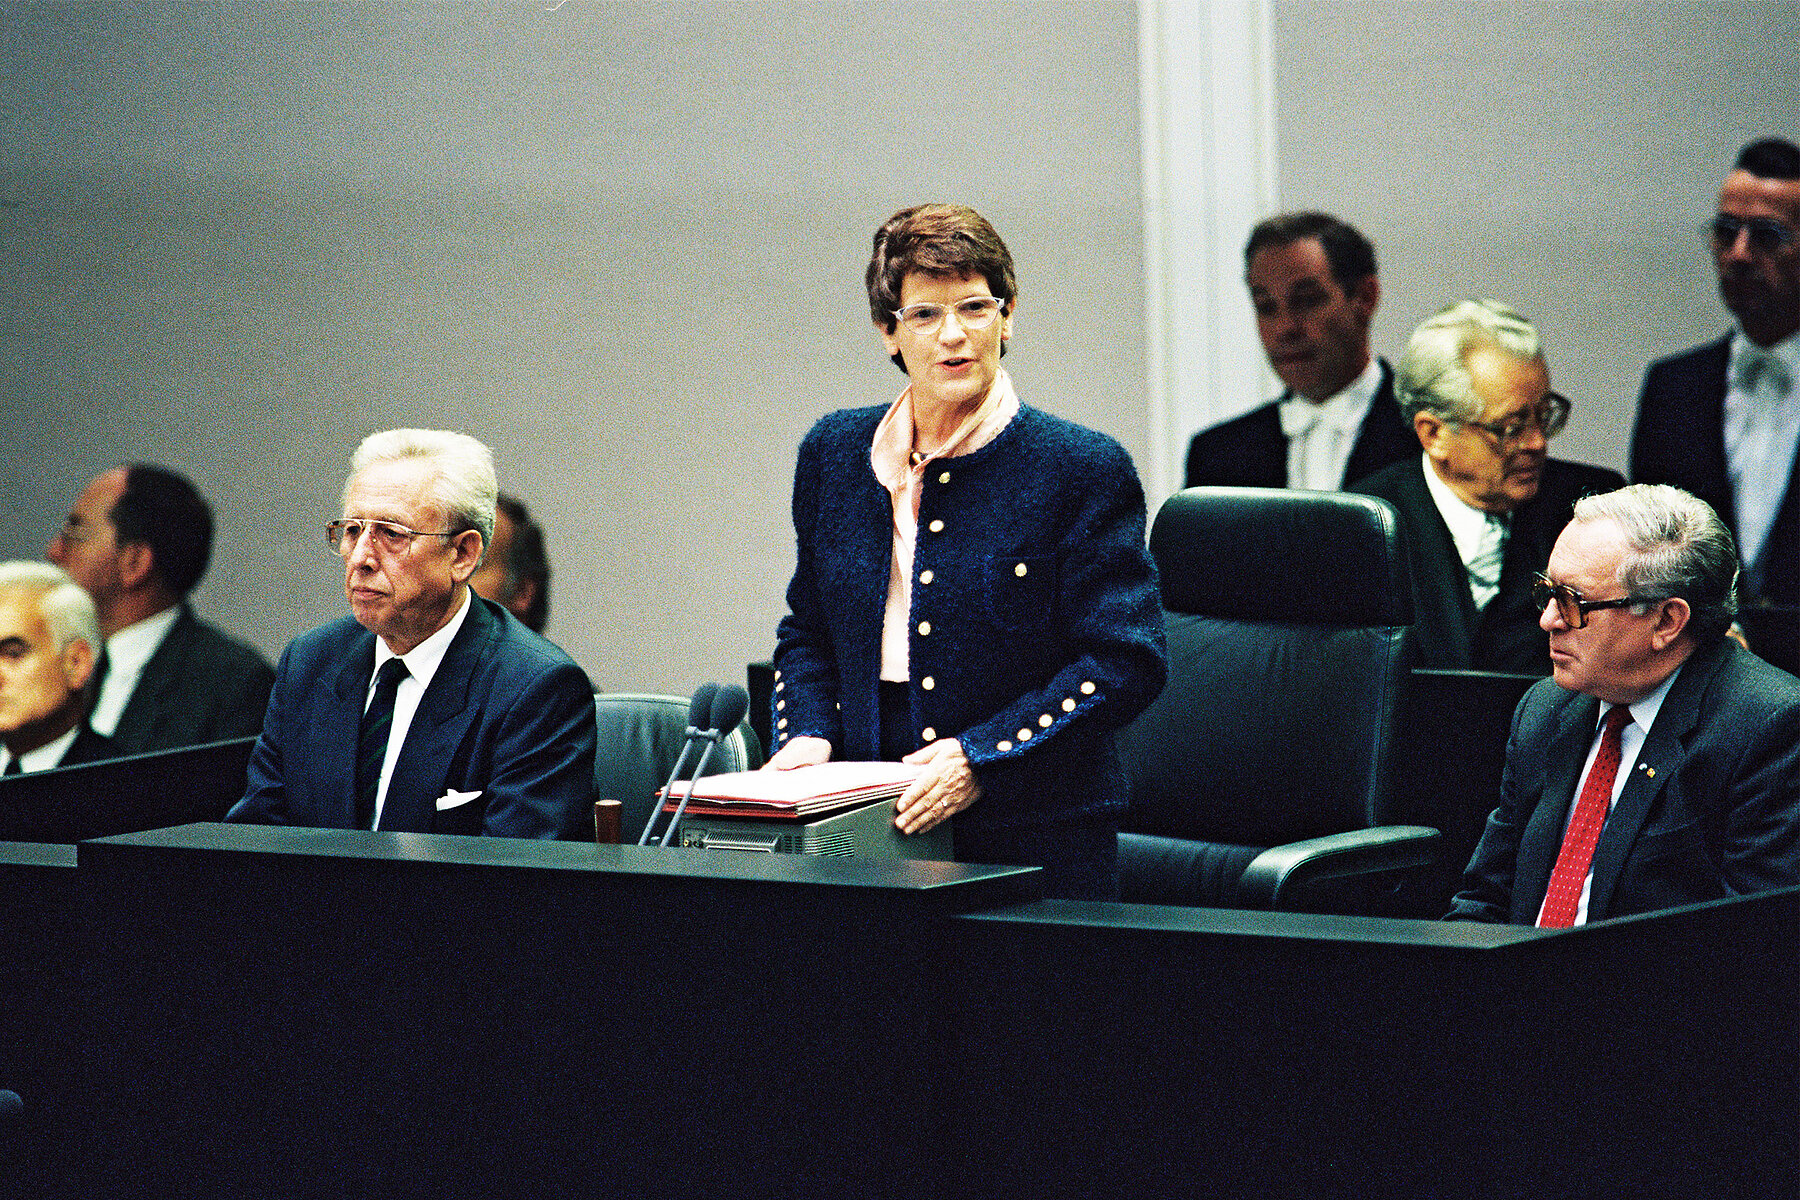 Rita Süssmuth steht an einem Podium und spricht umgeben von sitzenden männlichen Politikern. 